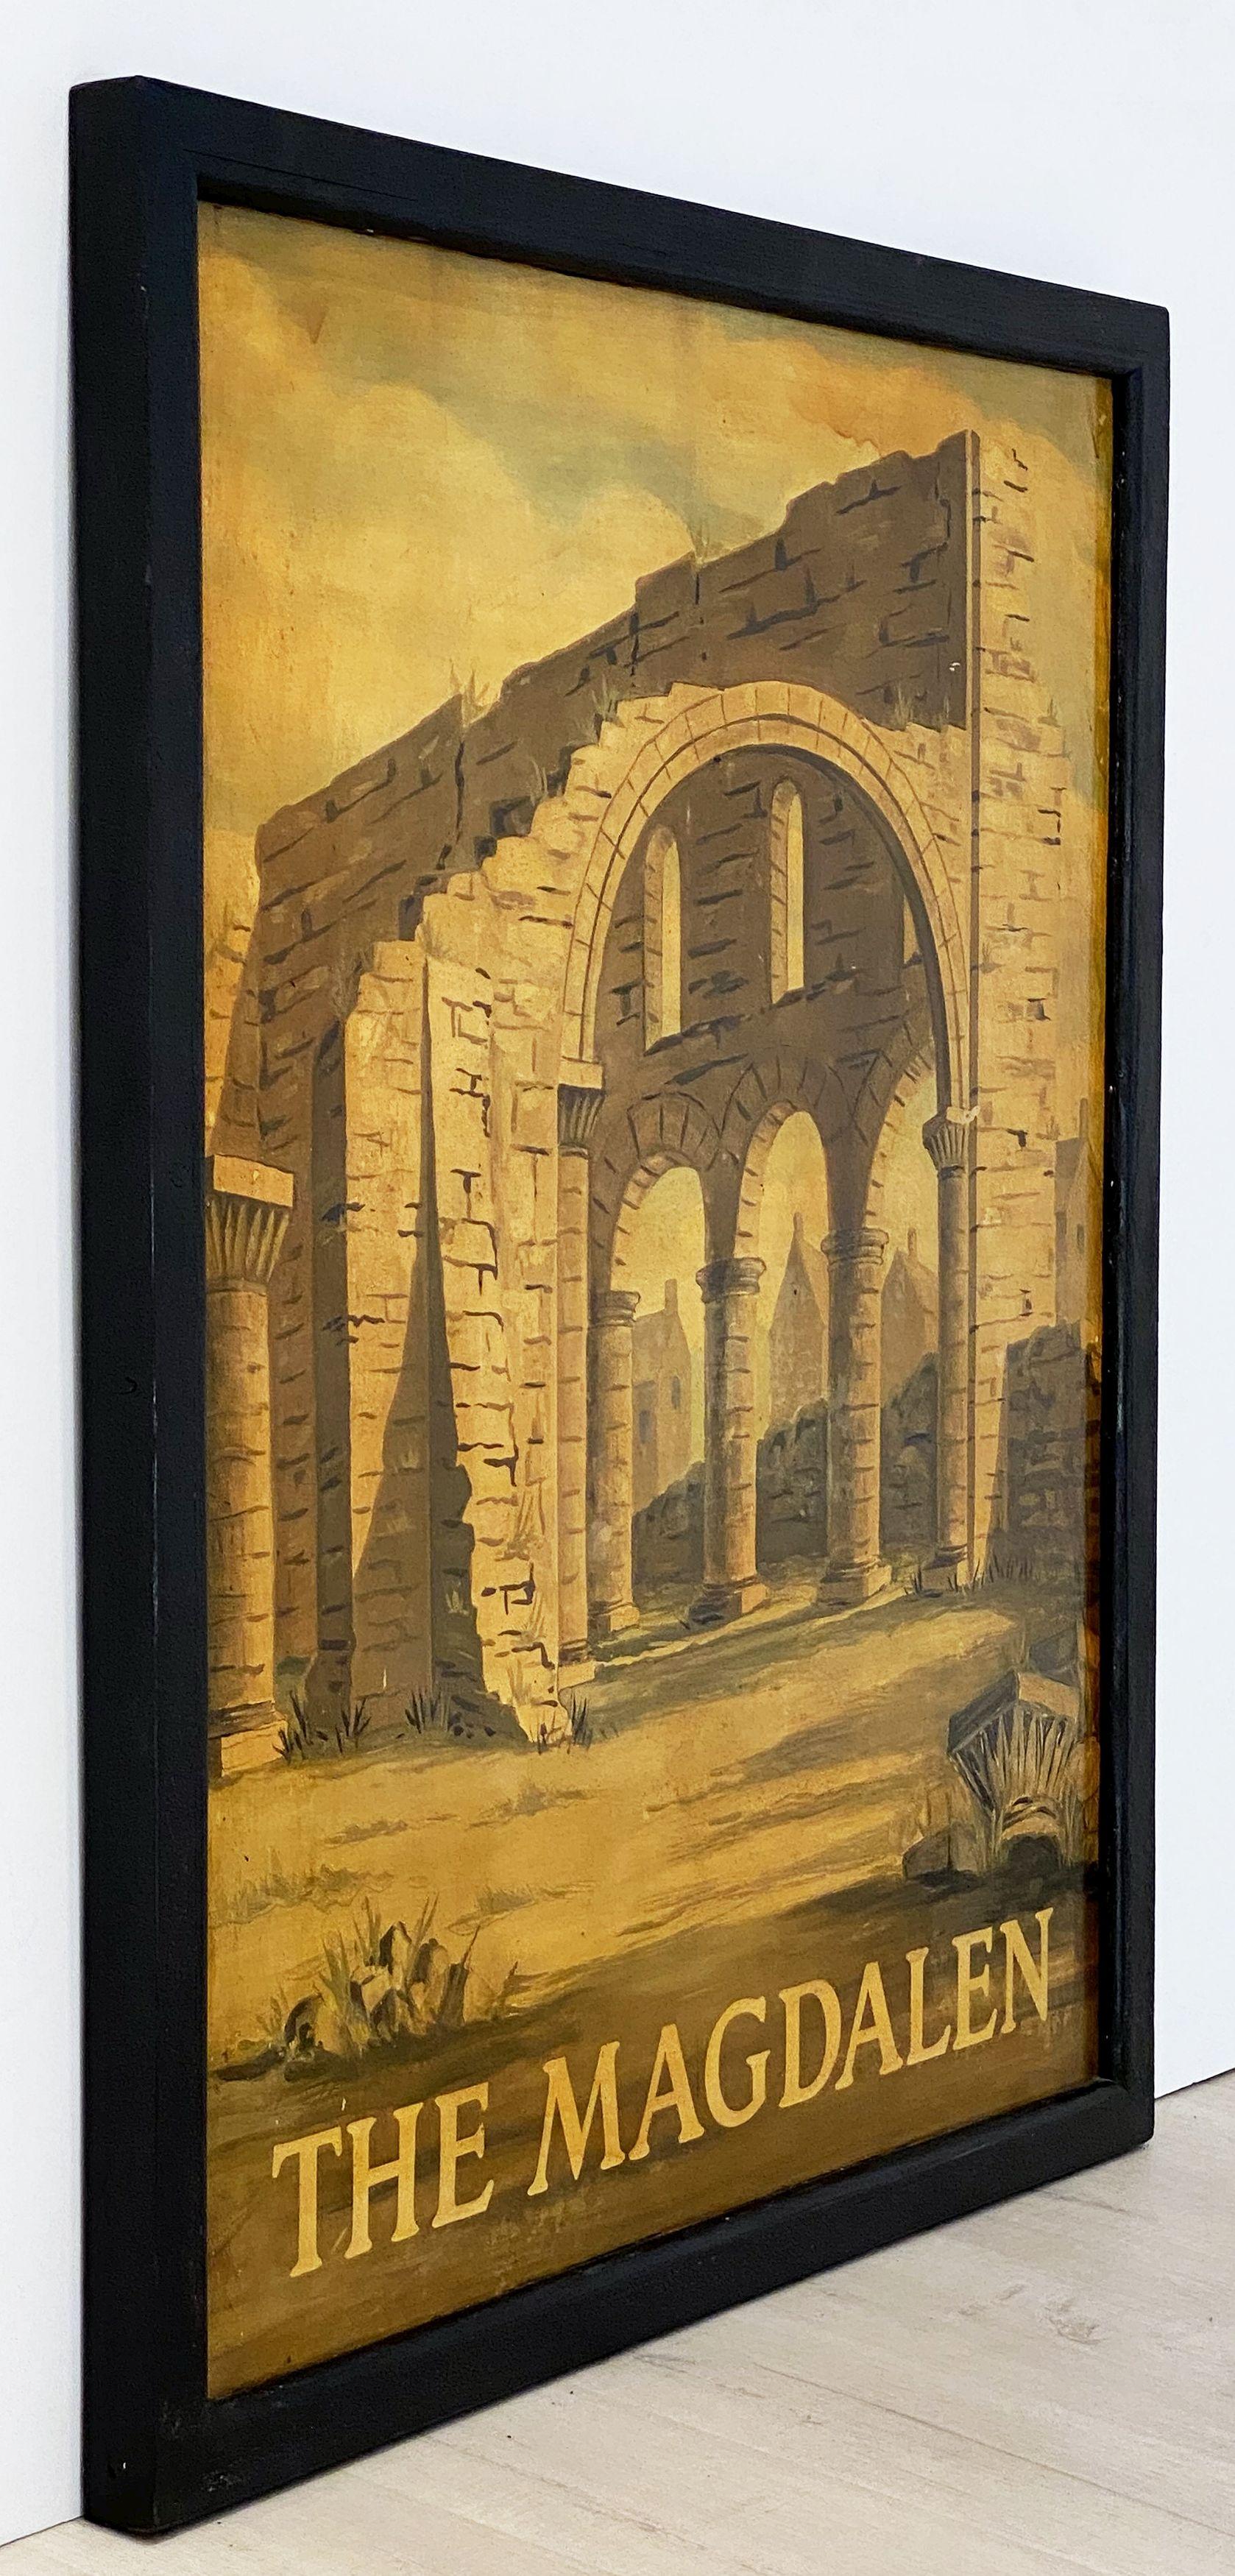 Authentique enseigne de pub anglais (unilatérale) représentant une peinture de la ruine d'une abbaye monastique, intitulée : The Magdalen.
 
Un très bel exemple d'illustration publicitaire vintage, prêt à être exposé.